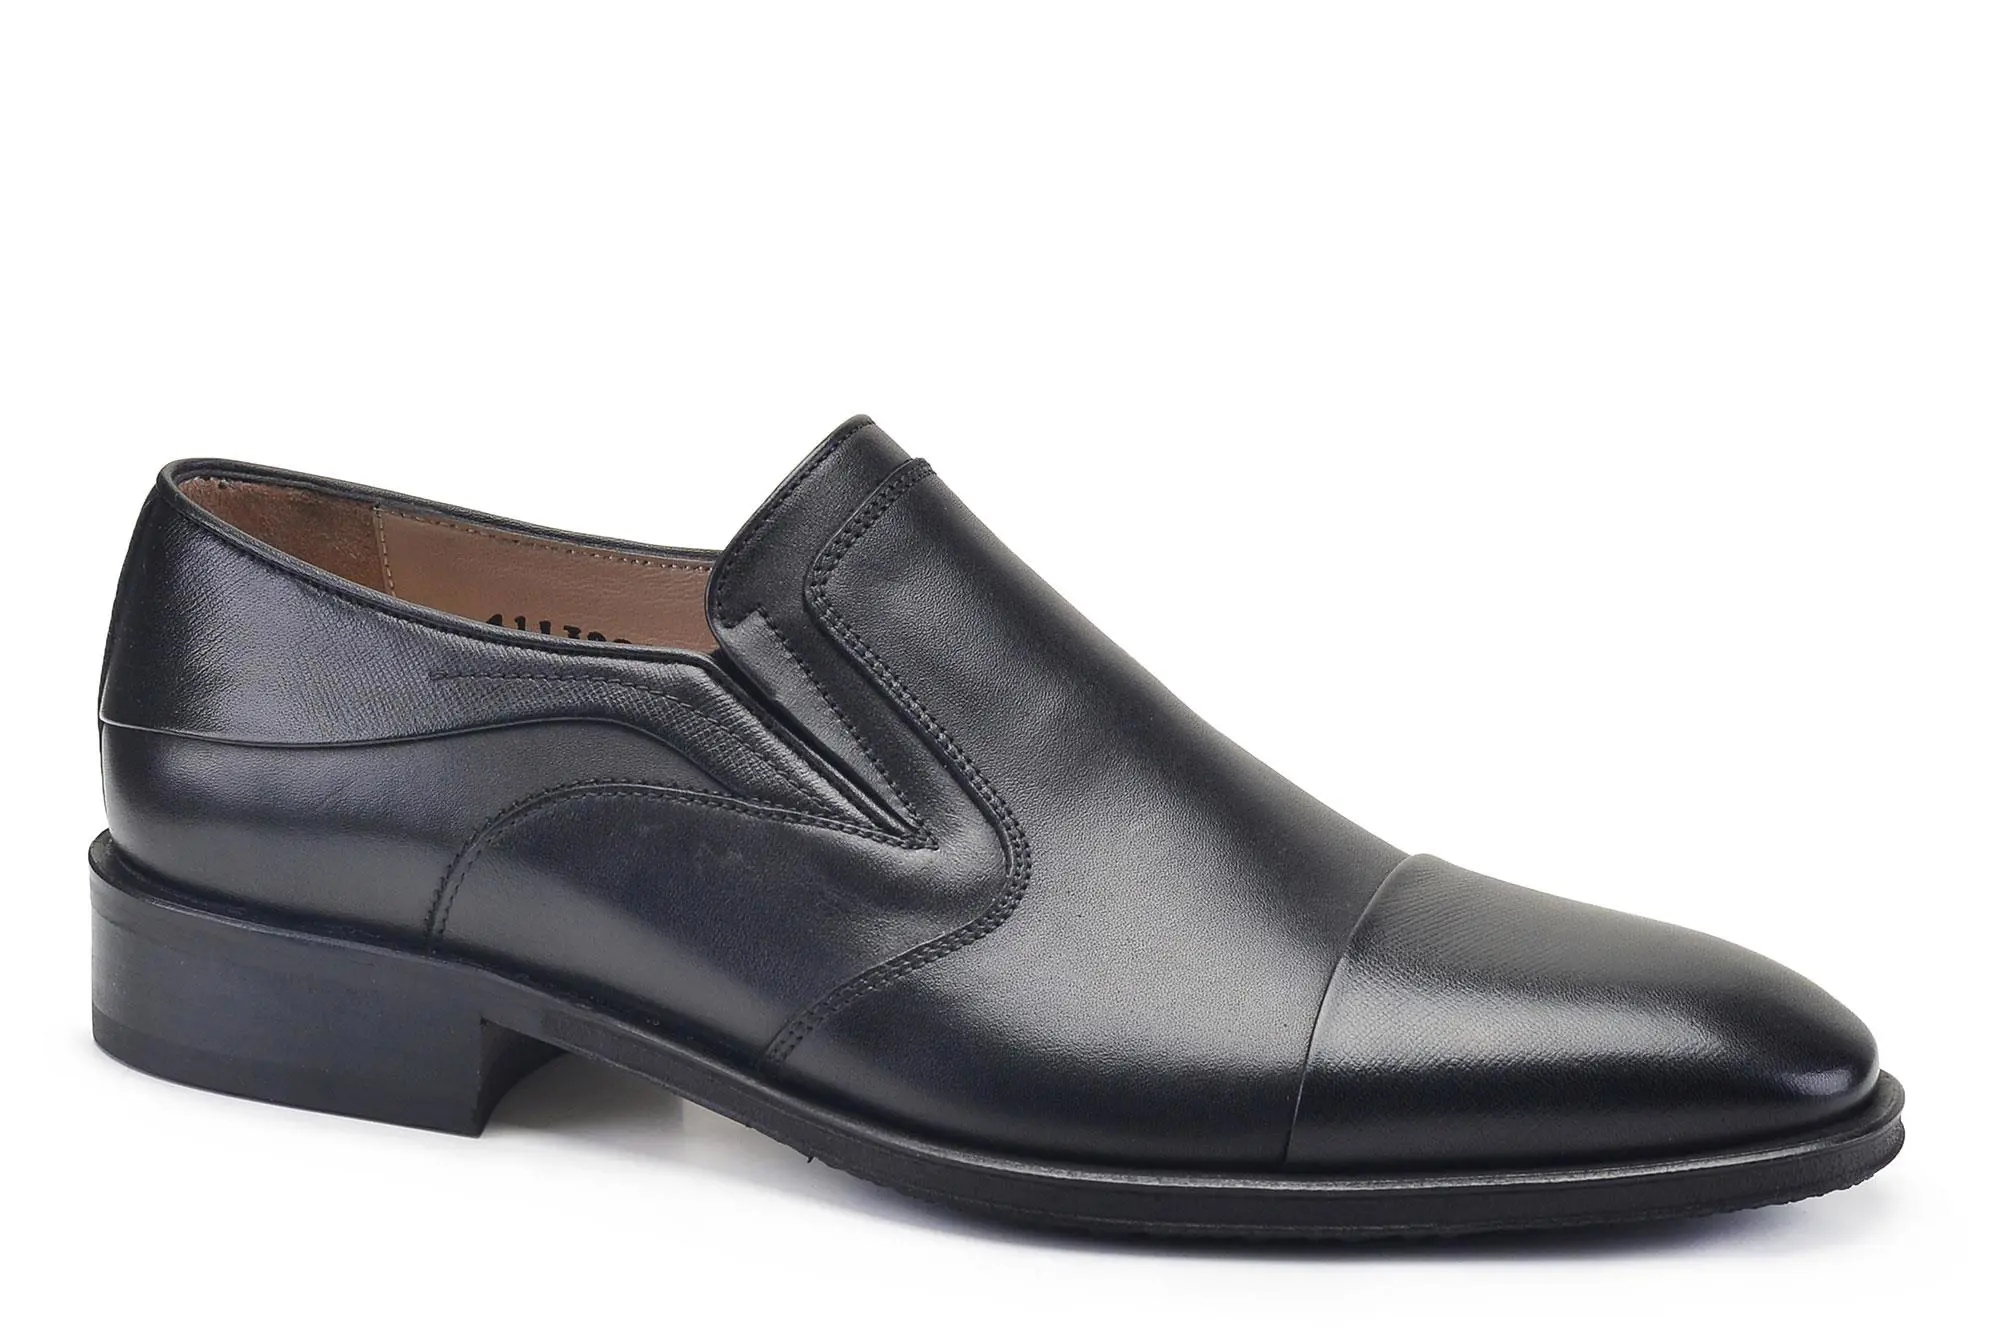 Nevzat Onay Siyah Kışlık Erkek Ayakkabı -90711-. 2